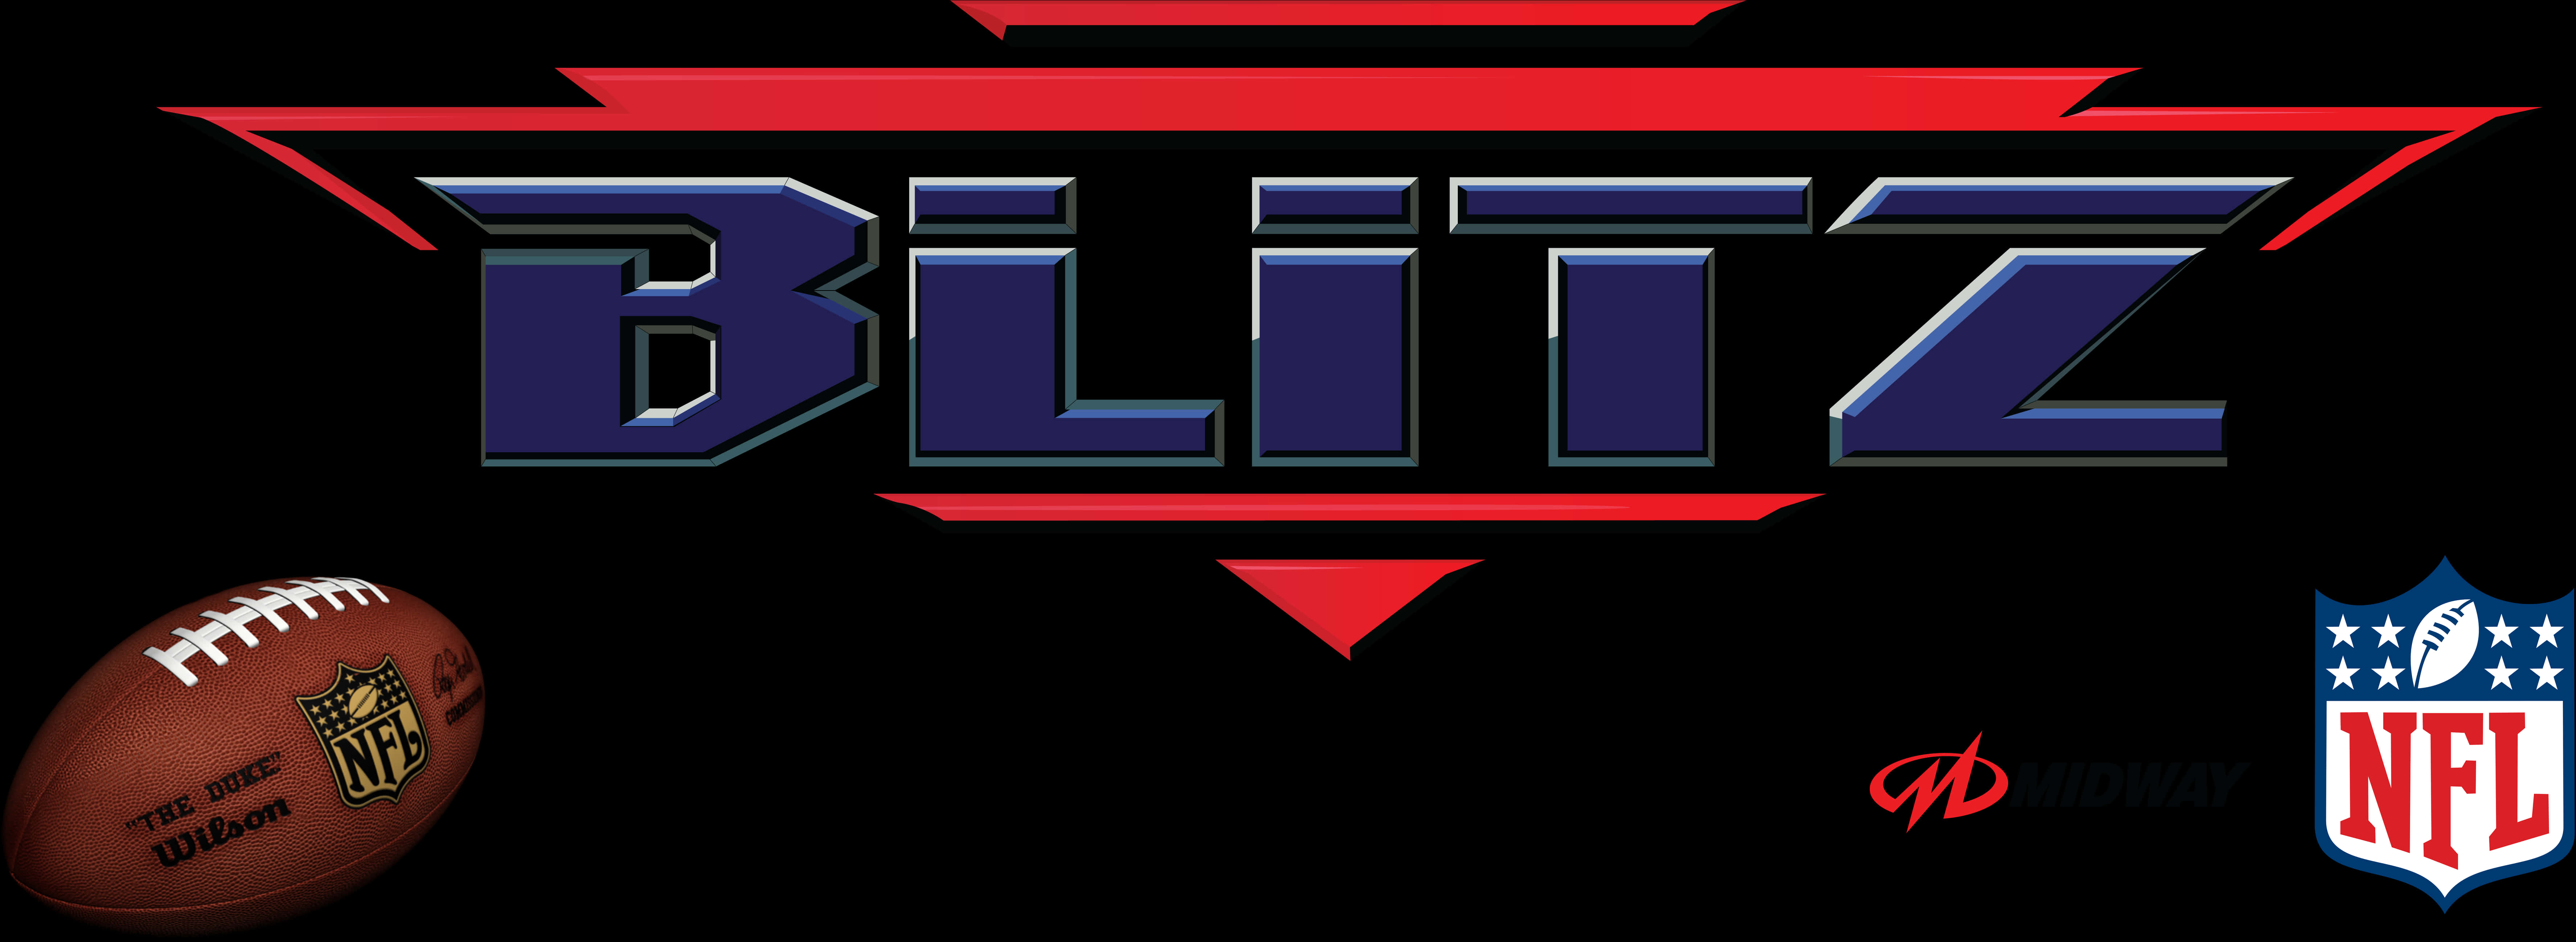 N F L Blitz Logowith Footballand N F L Shield